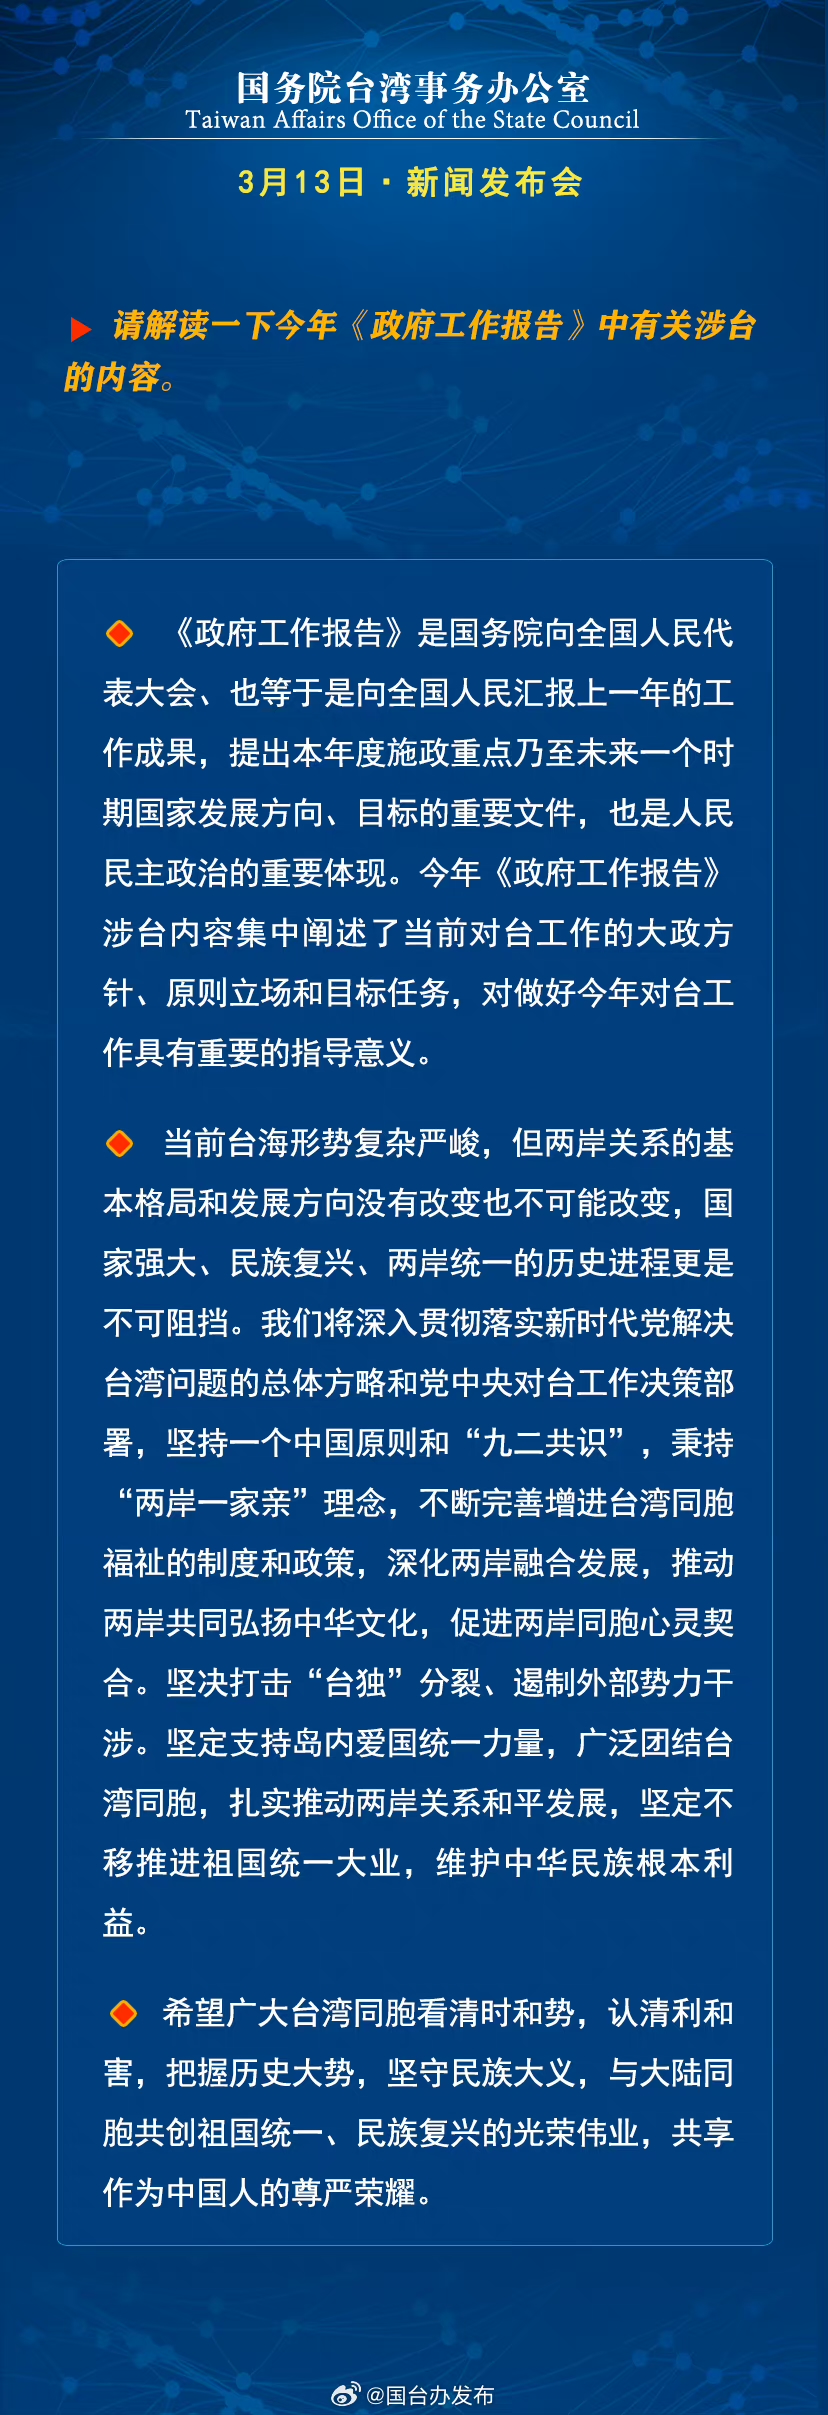 国务院台湾事务办公室3月13日·新闻发布会